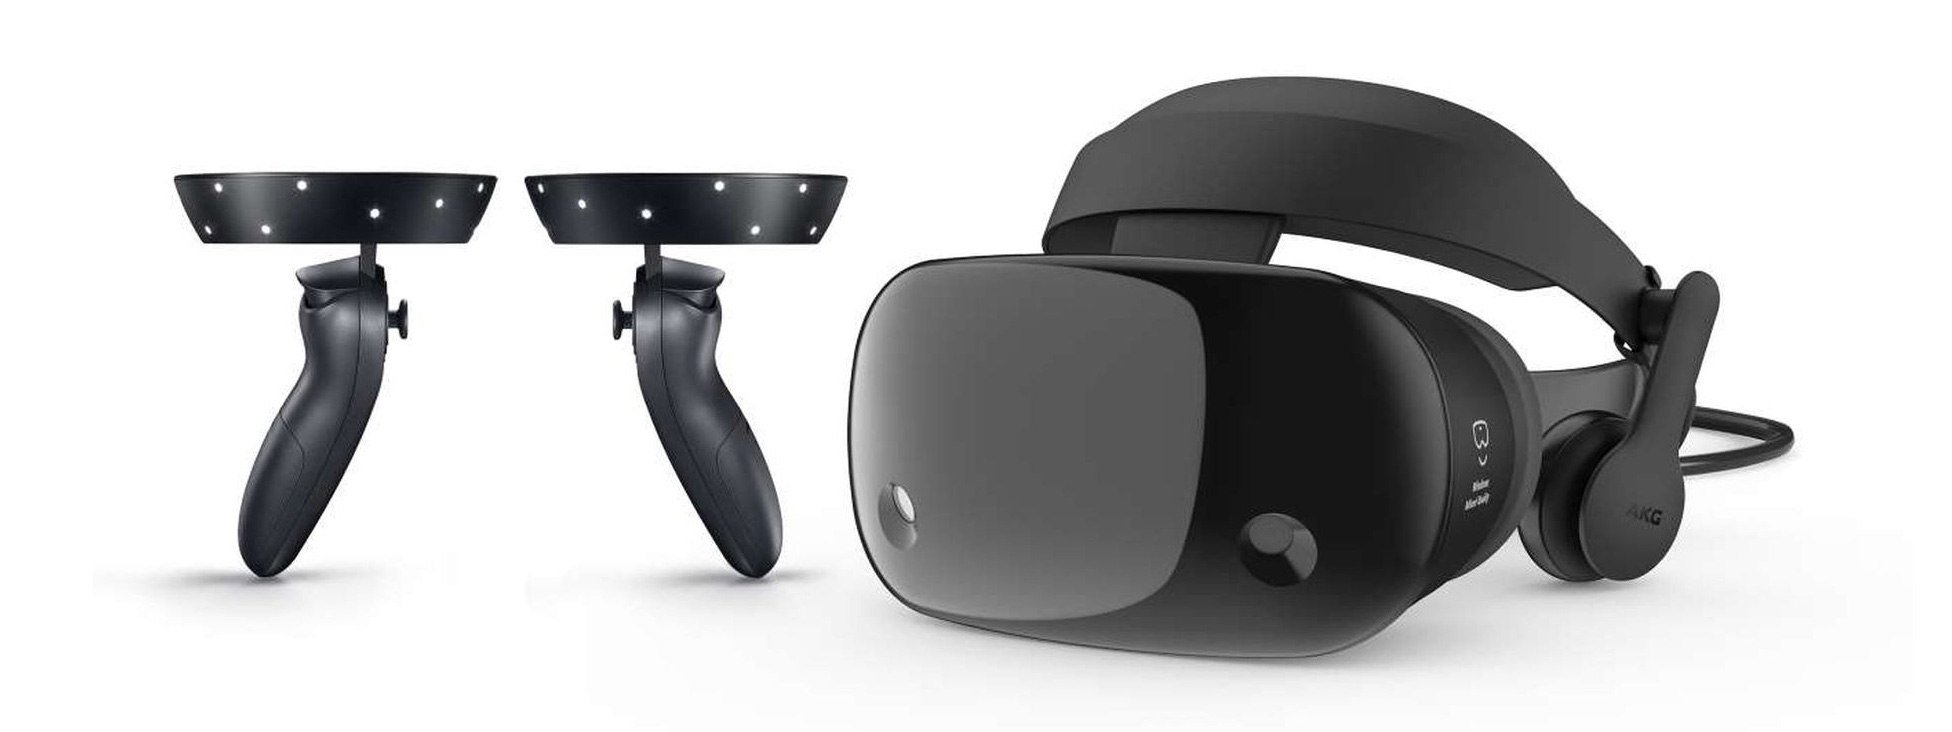 Samsung ra mắt kính AR/VR dùng với Windows, ngang hàng HTC Vive và Oculus Rift, giá 499$